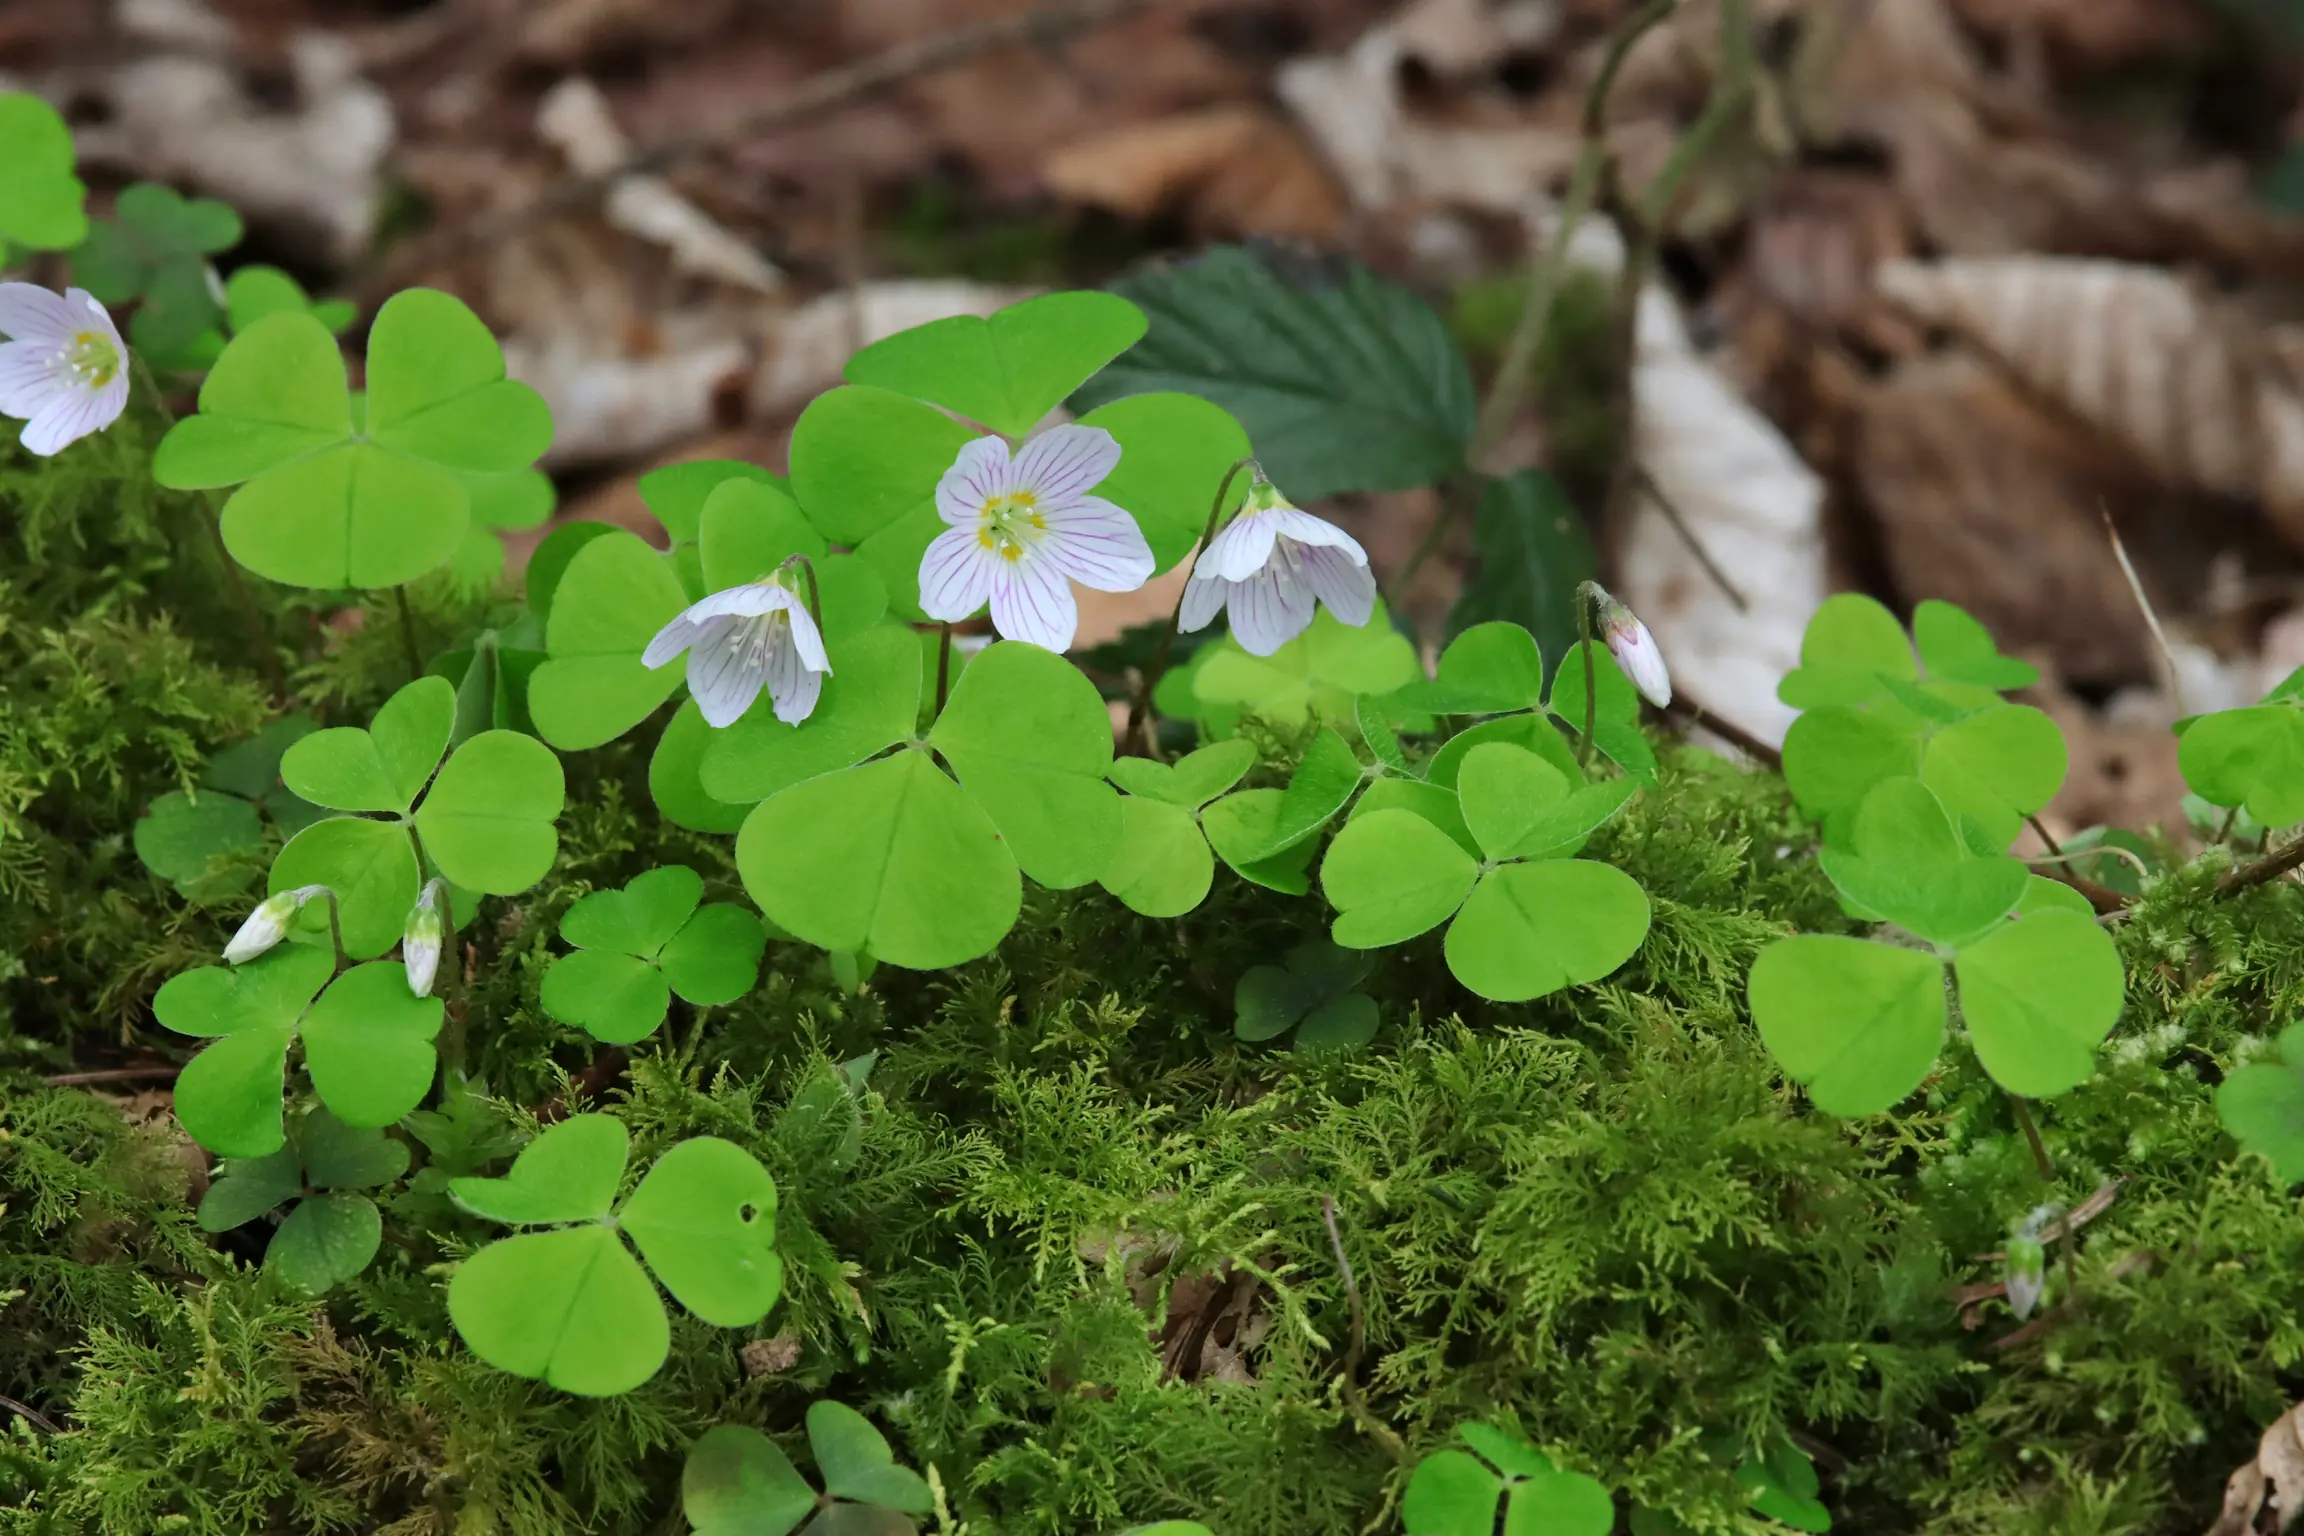 Wald-Sauerklee - die weißen Blüten sitzen am Ende von langen, dünnen Stängeln. Die Blätter haben eine Dreiteilung und sind hellgrün gefärbt.